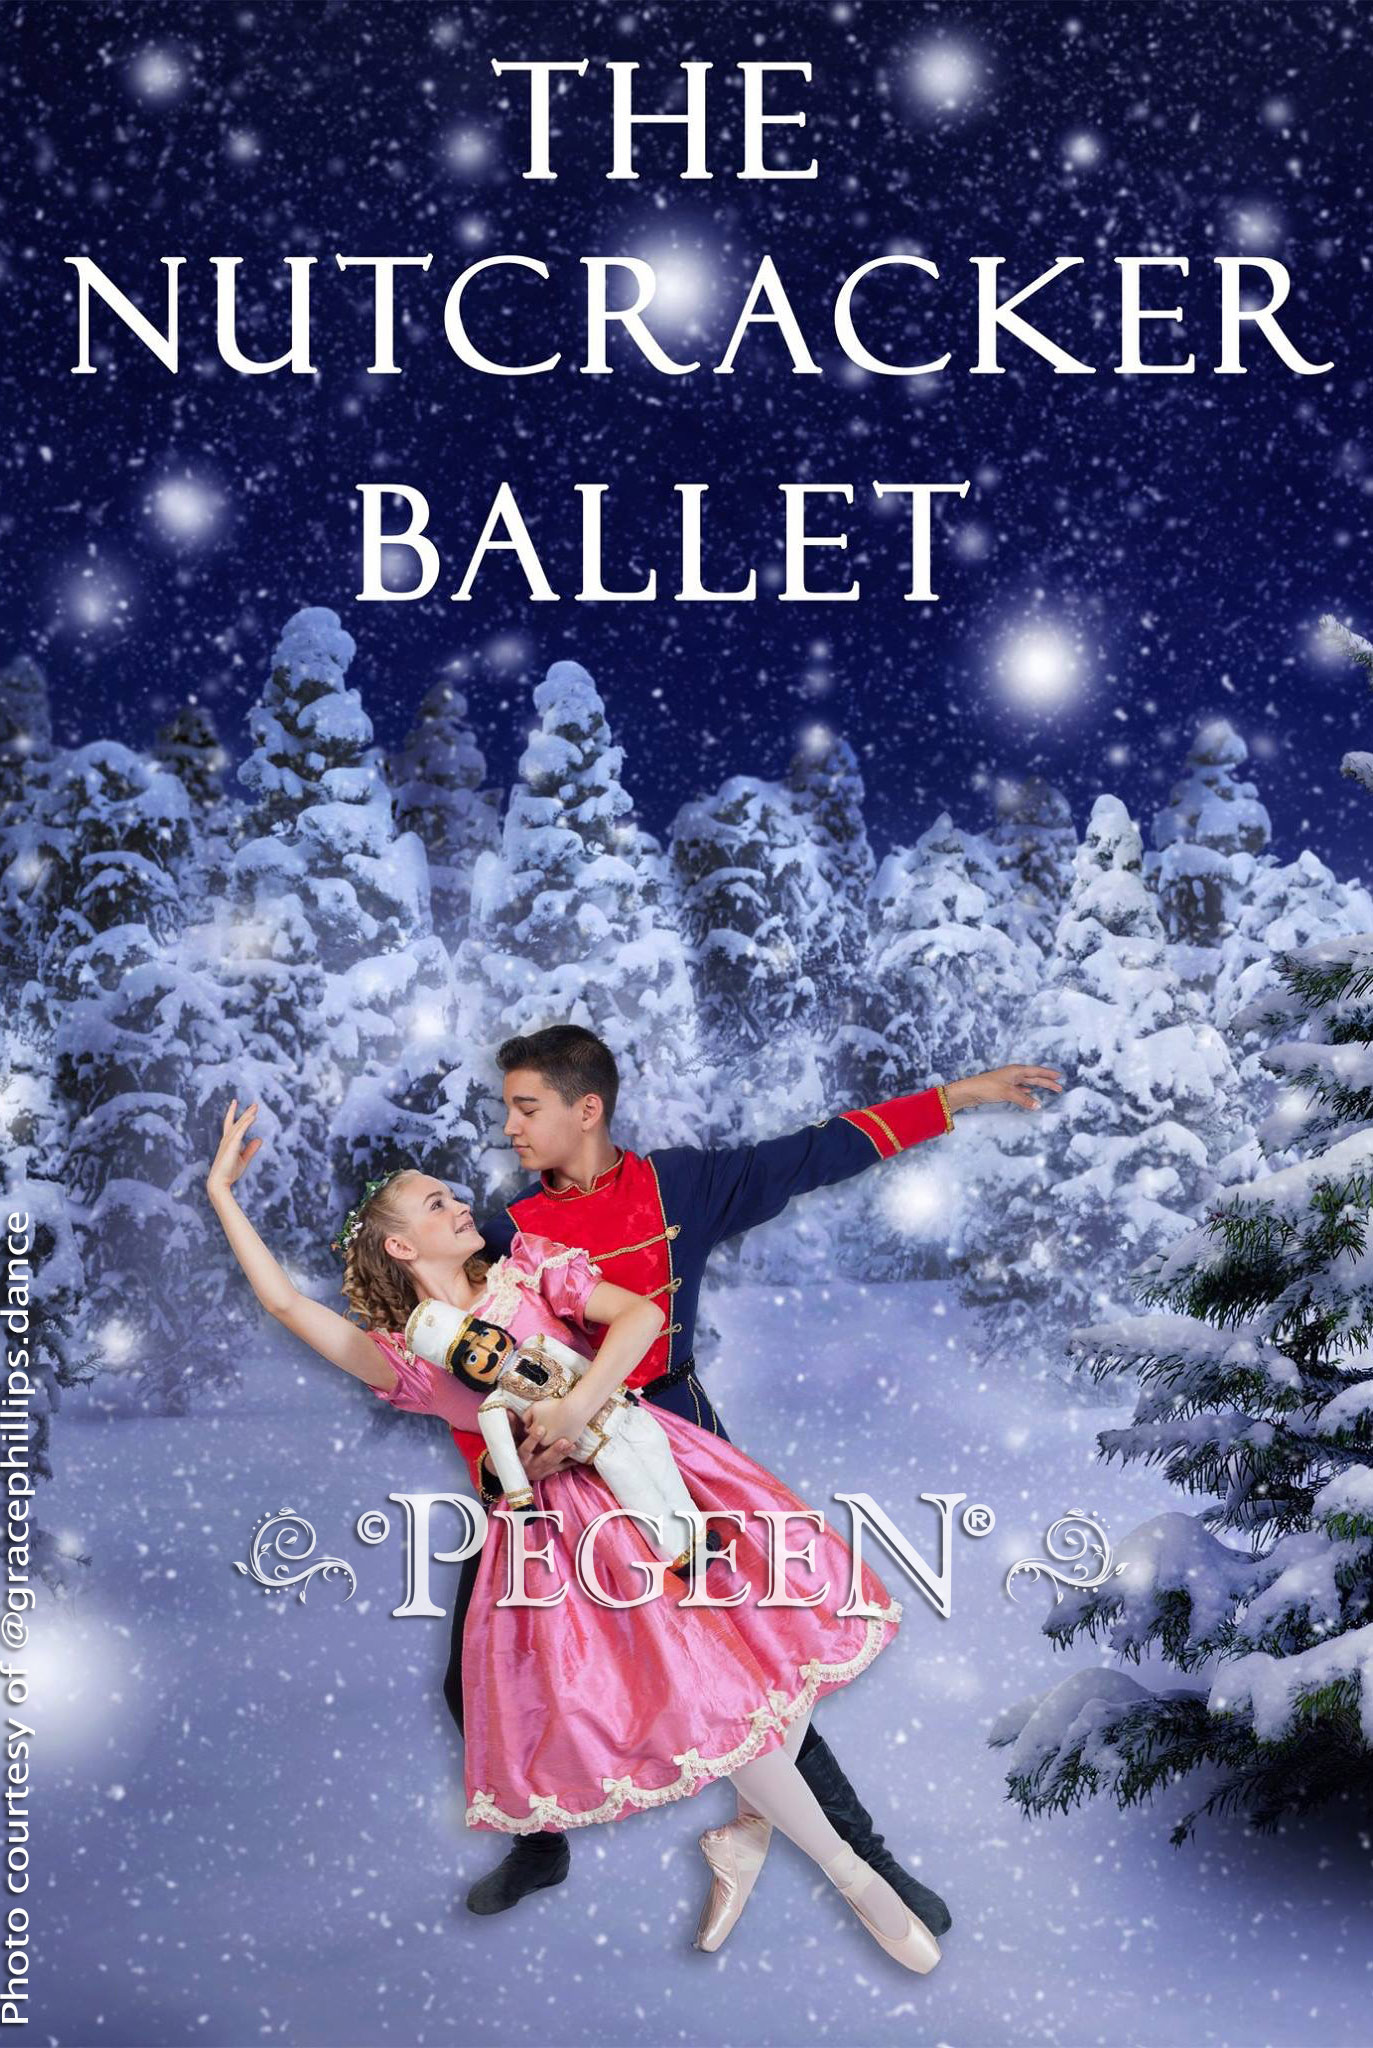 The Nutcracker Ballet Photography | Pegeen